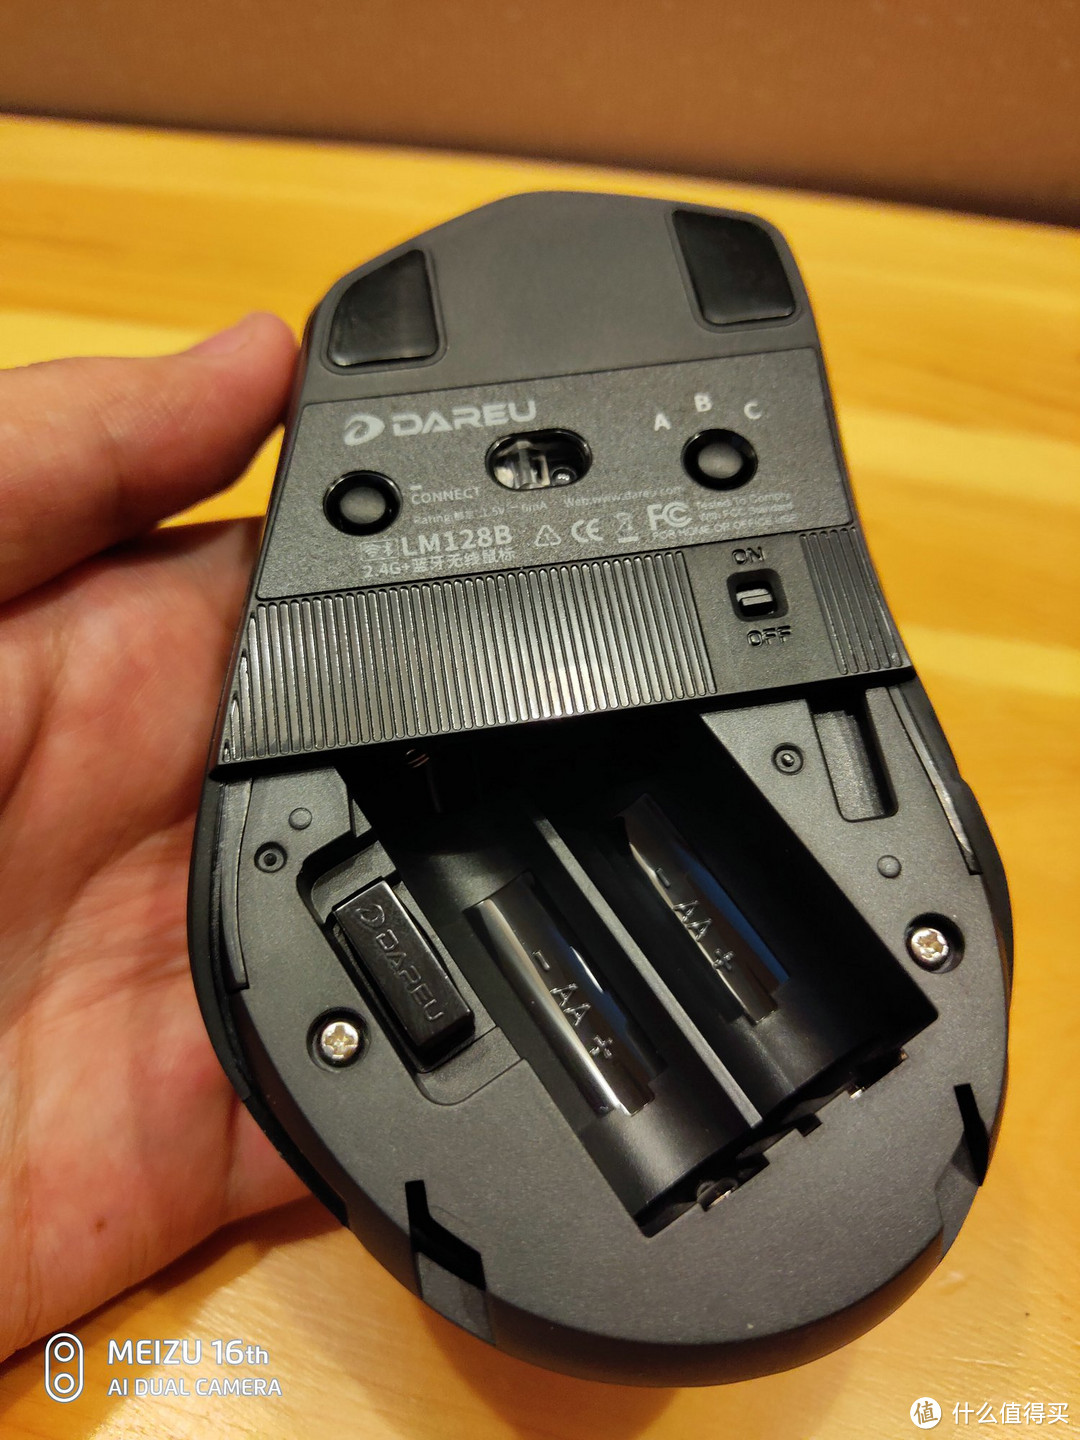 无线双模办公新选择—DAREU 达尔优 LM128B 鼠标开箱